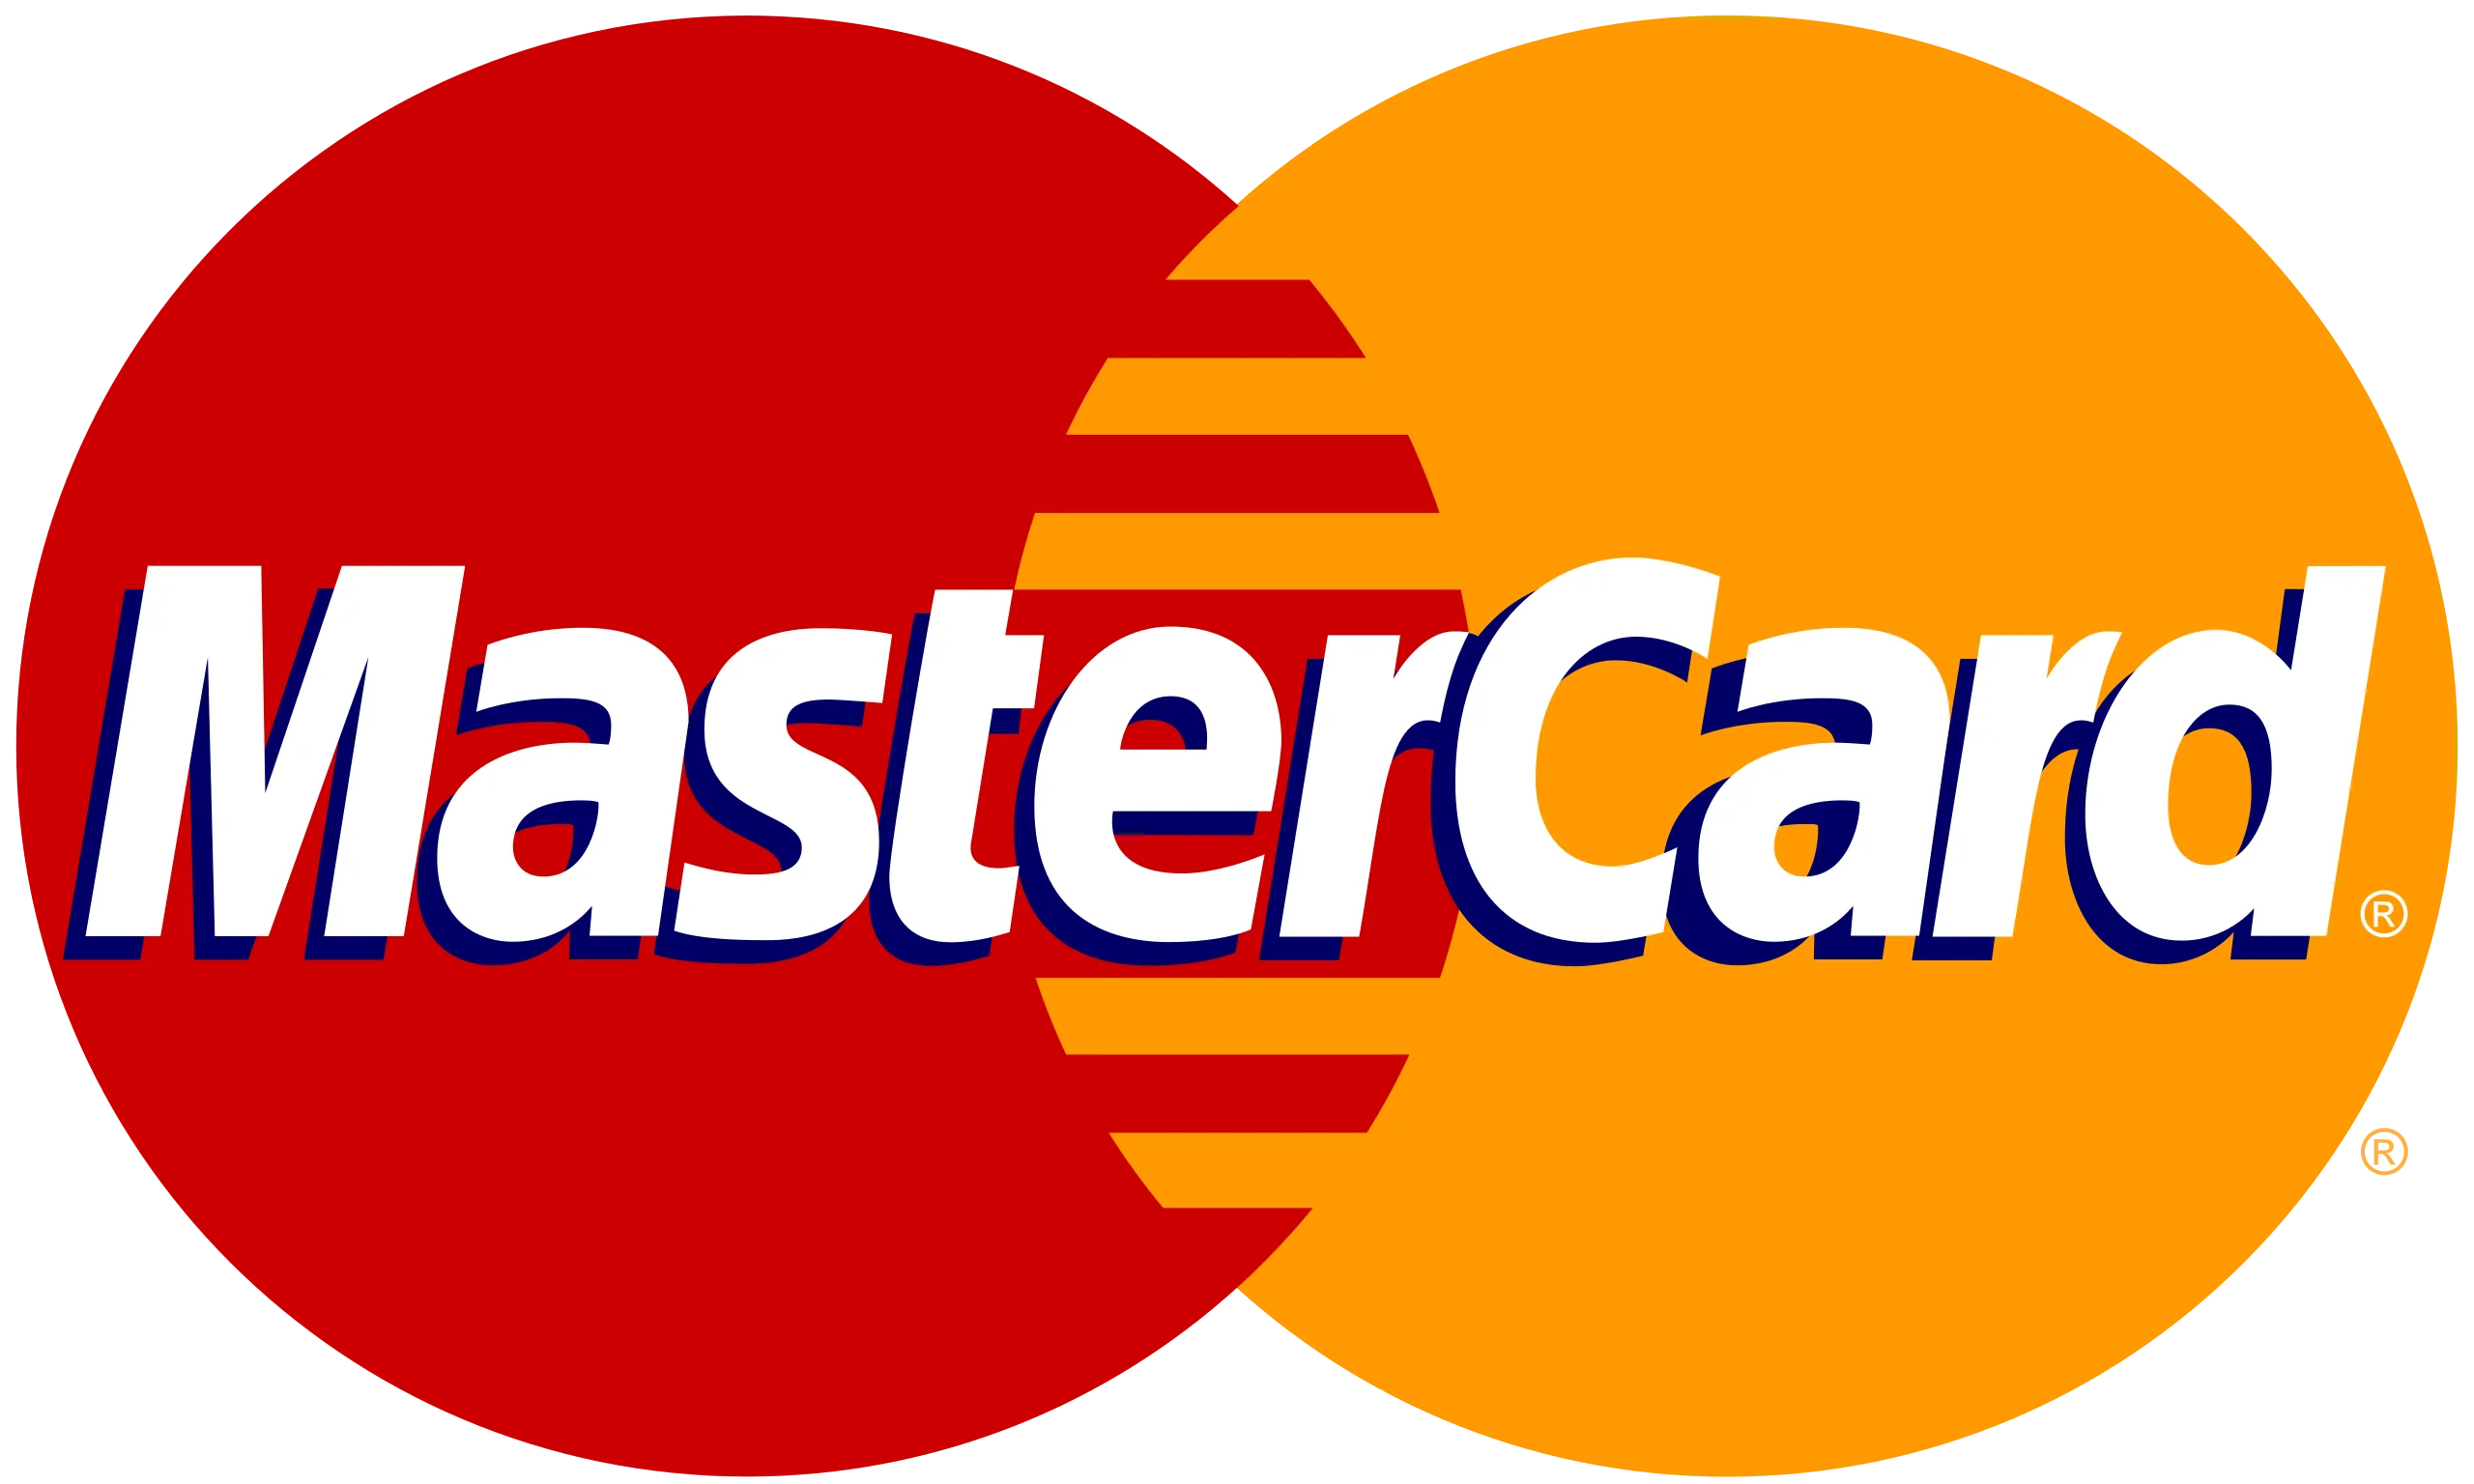 Mastercard credit card